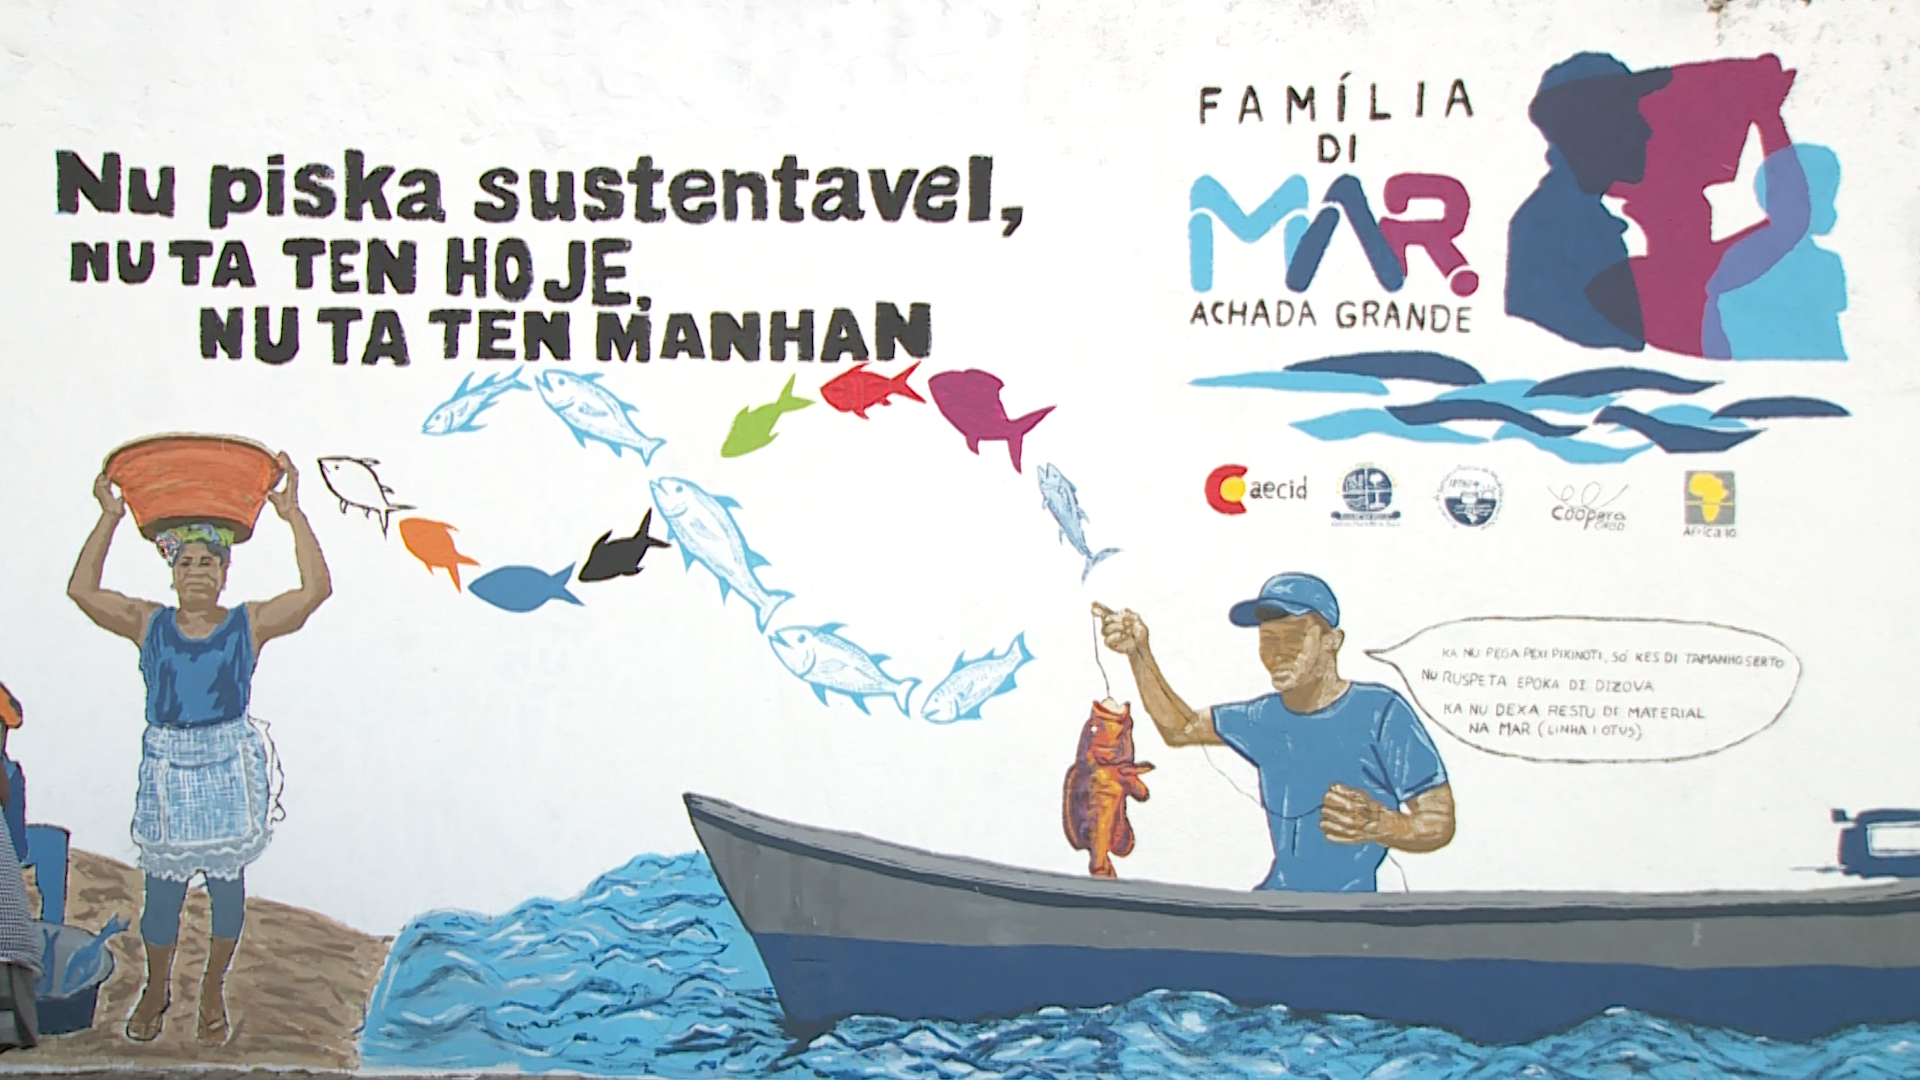 Pescadores e peixeiras homenageados pelo projecto “Família di Mar”